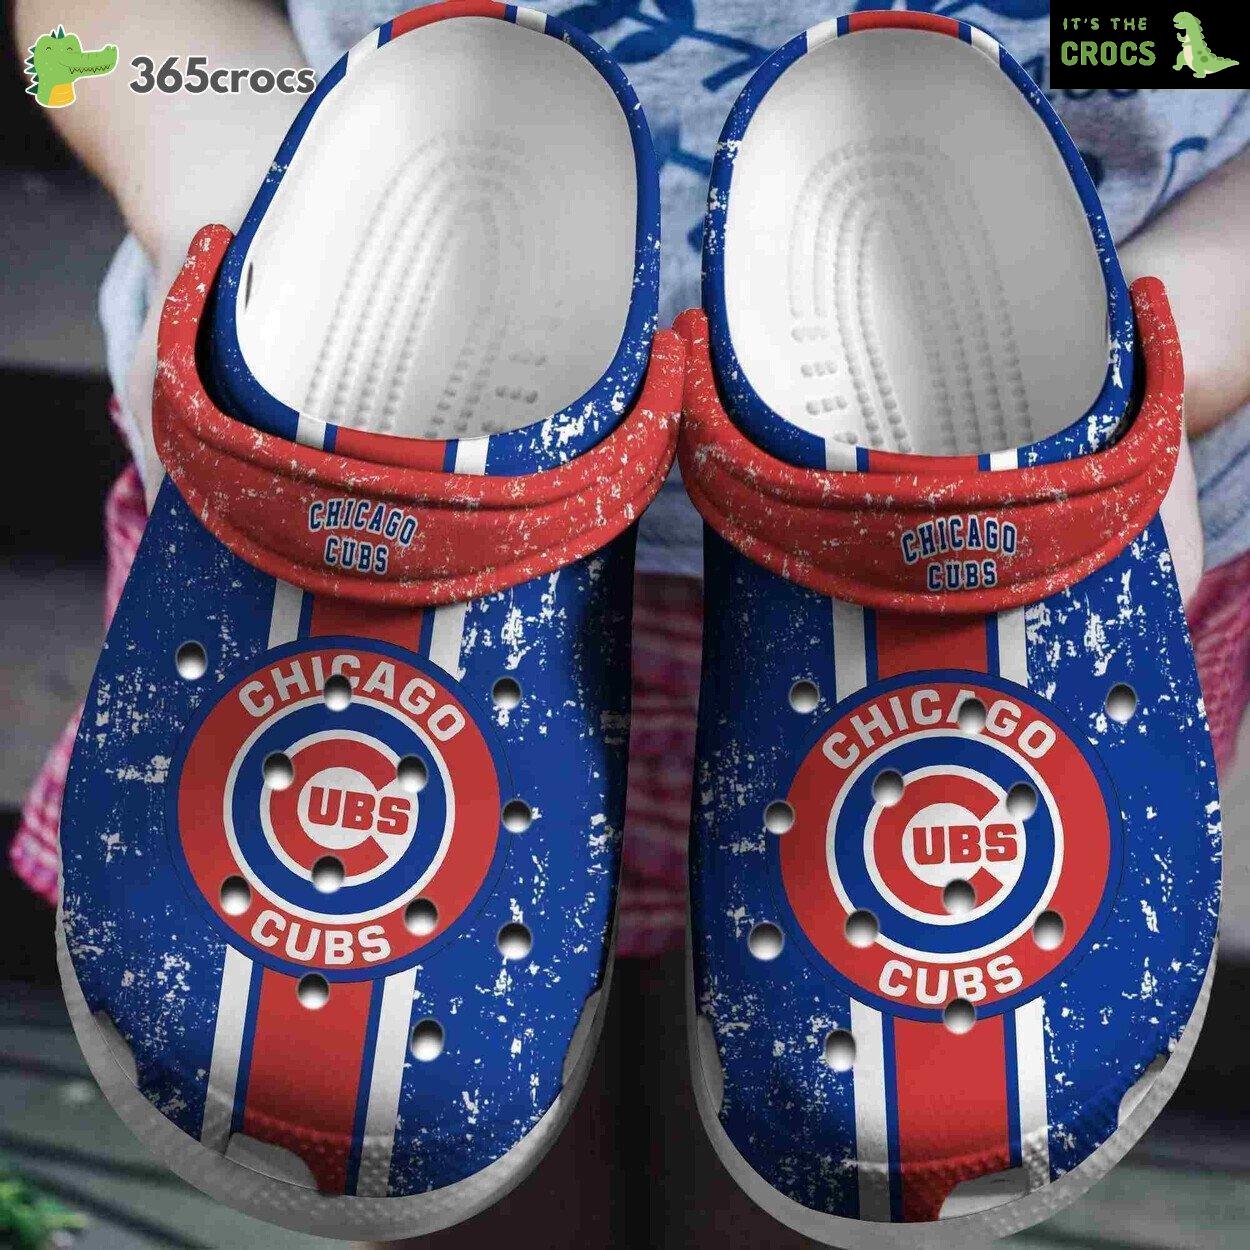 Boston Red Sox Baseball Unique Comfortable Crocs Clog Footwear Design